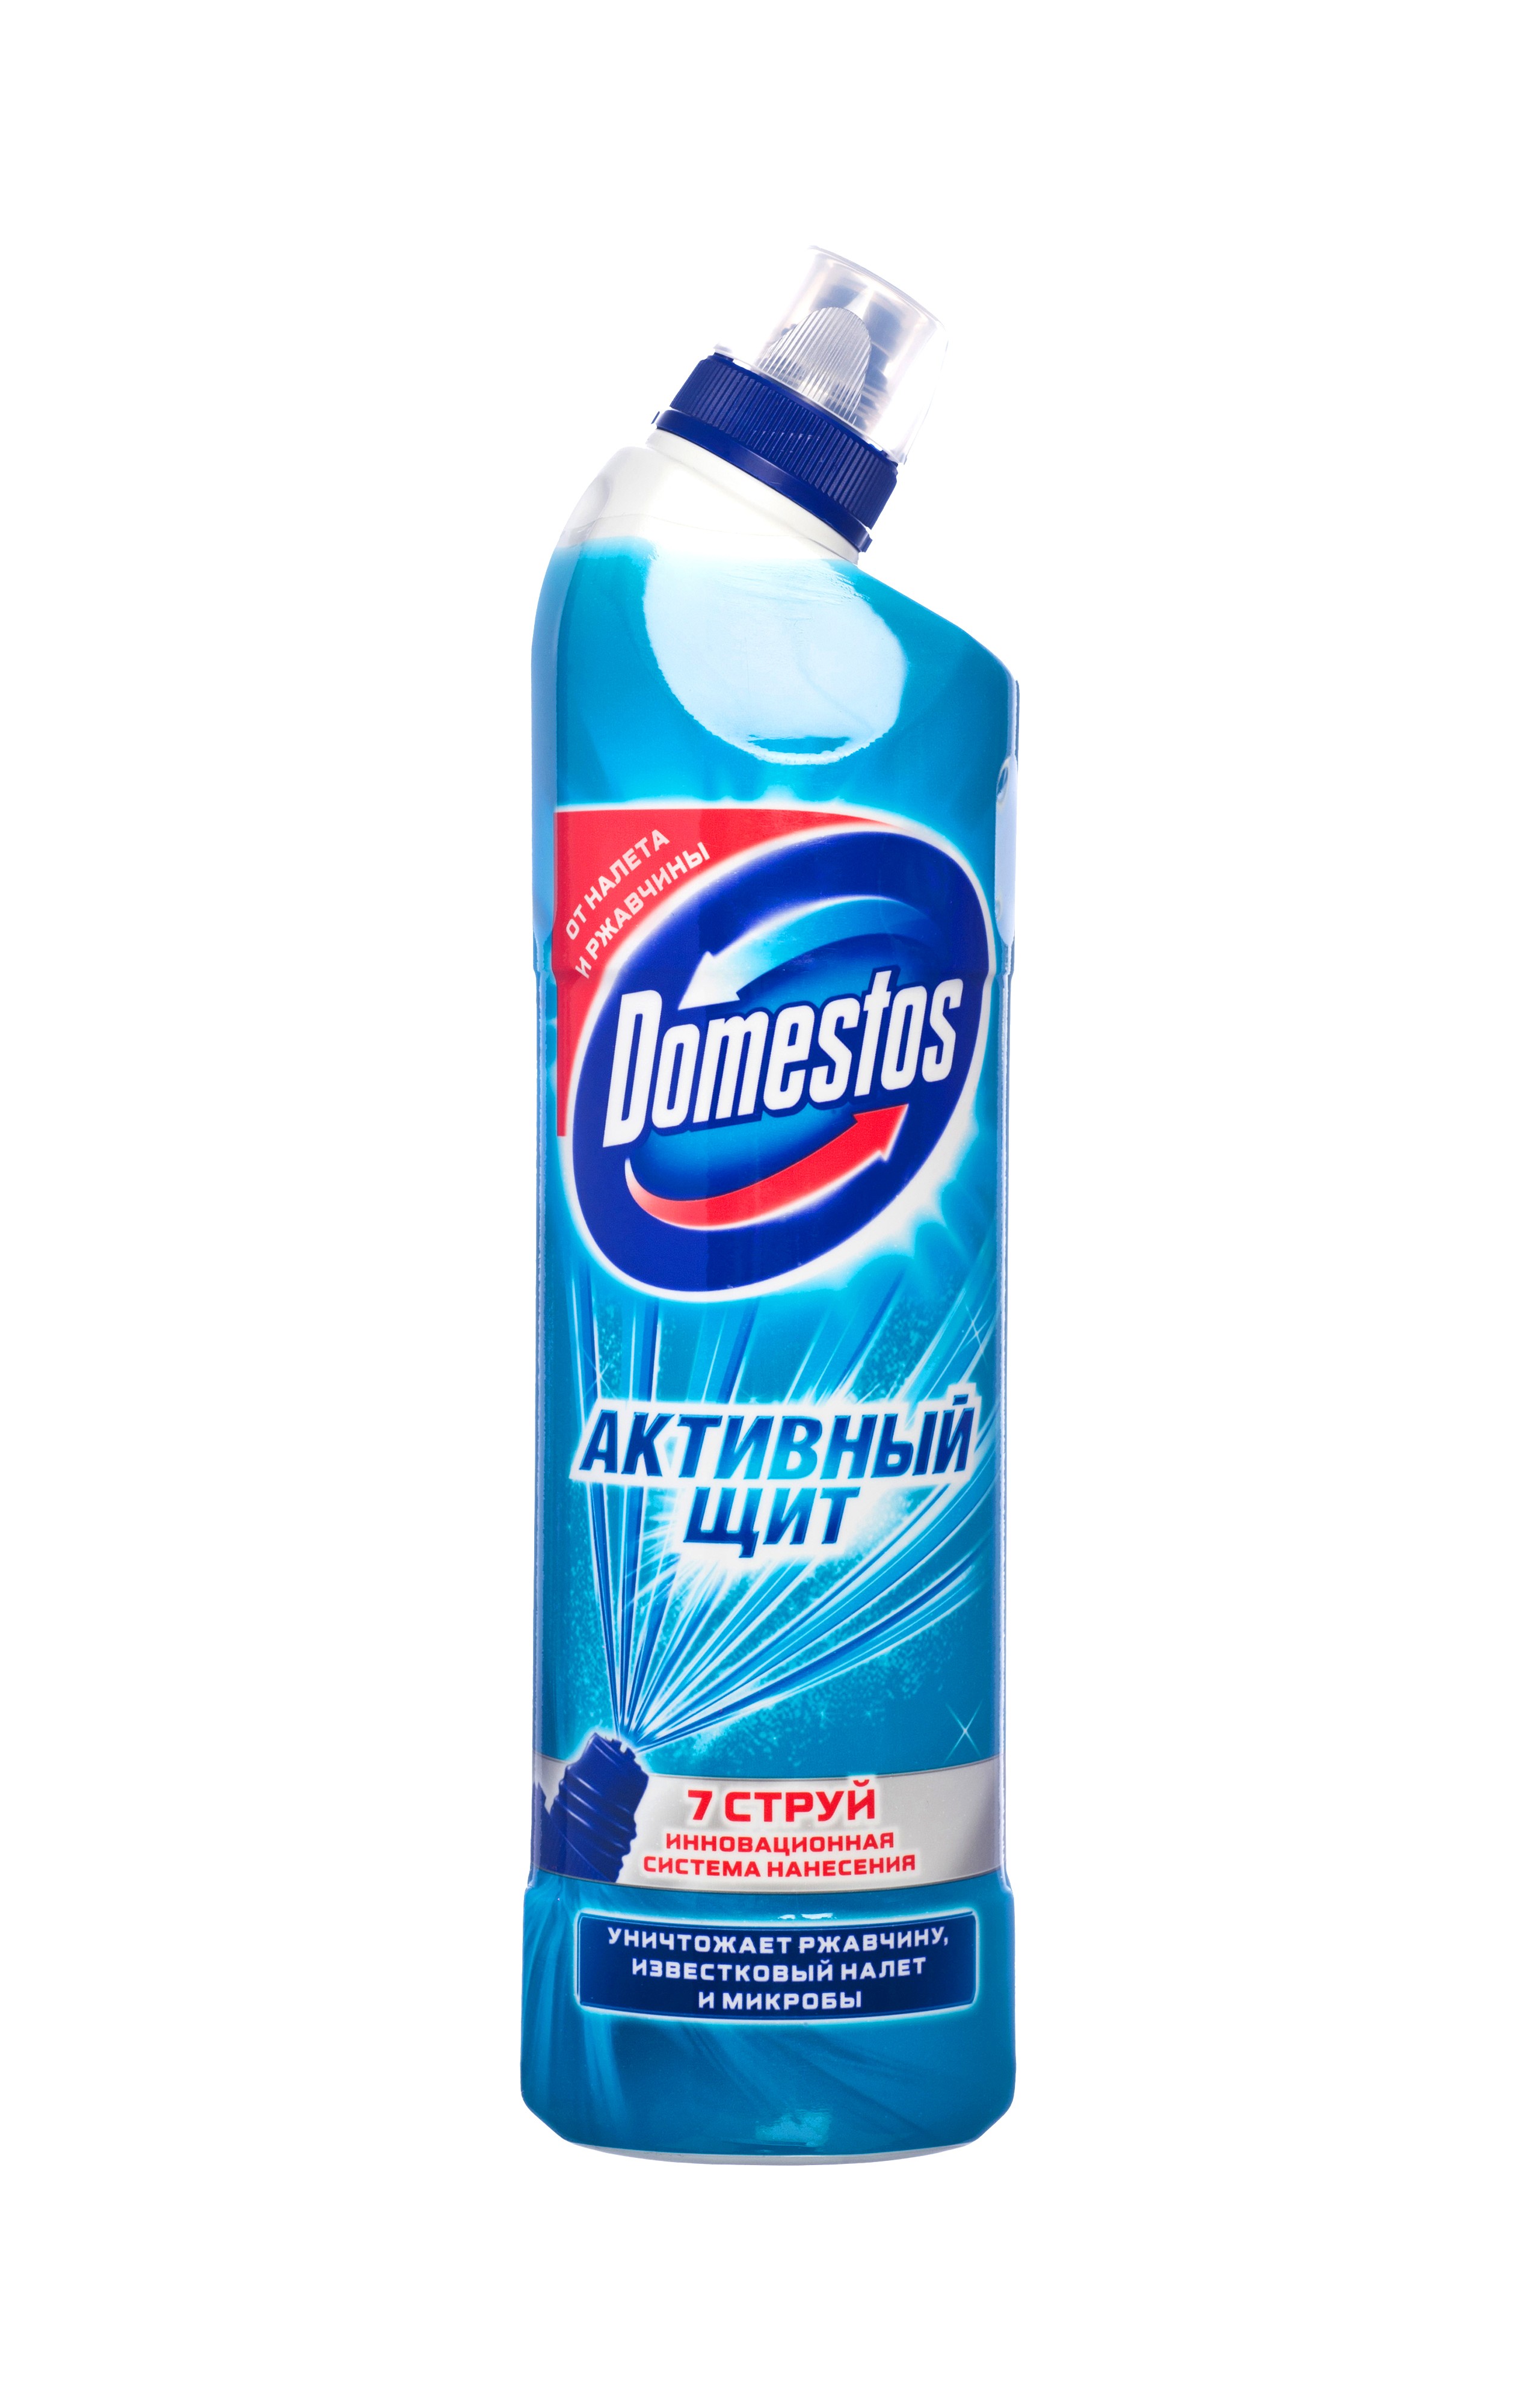 Чистящее средство Domestos 